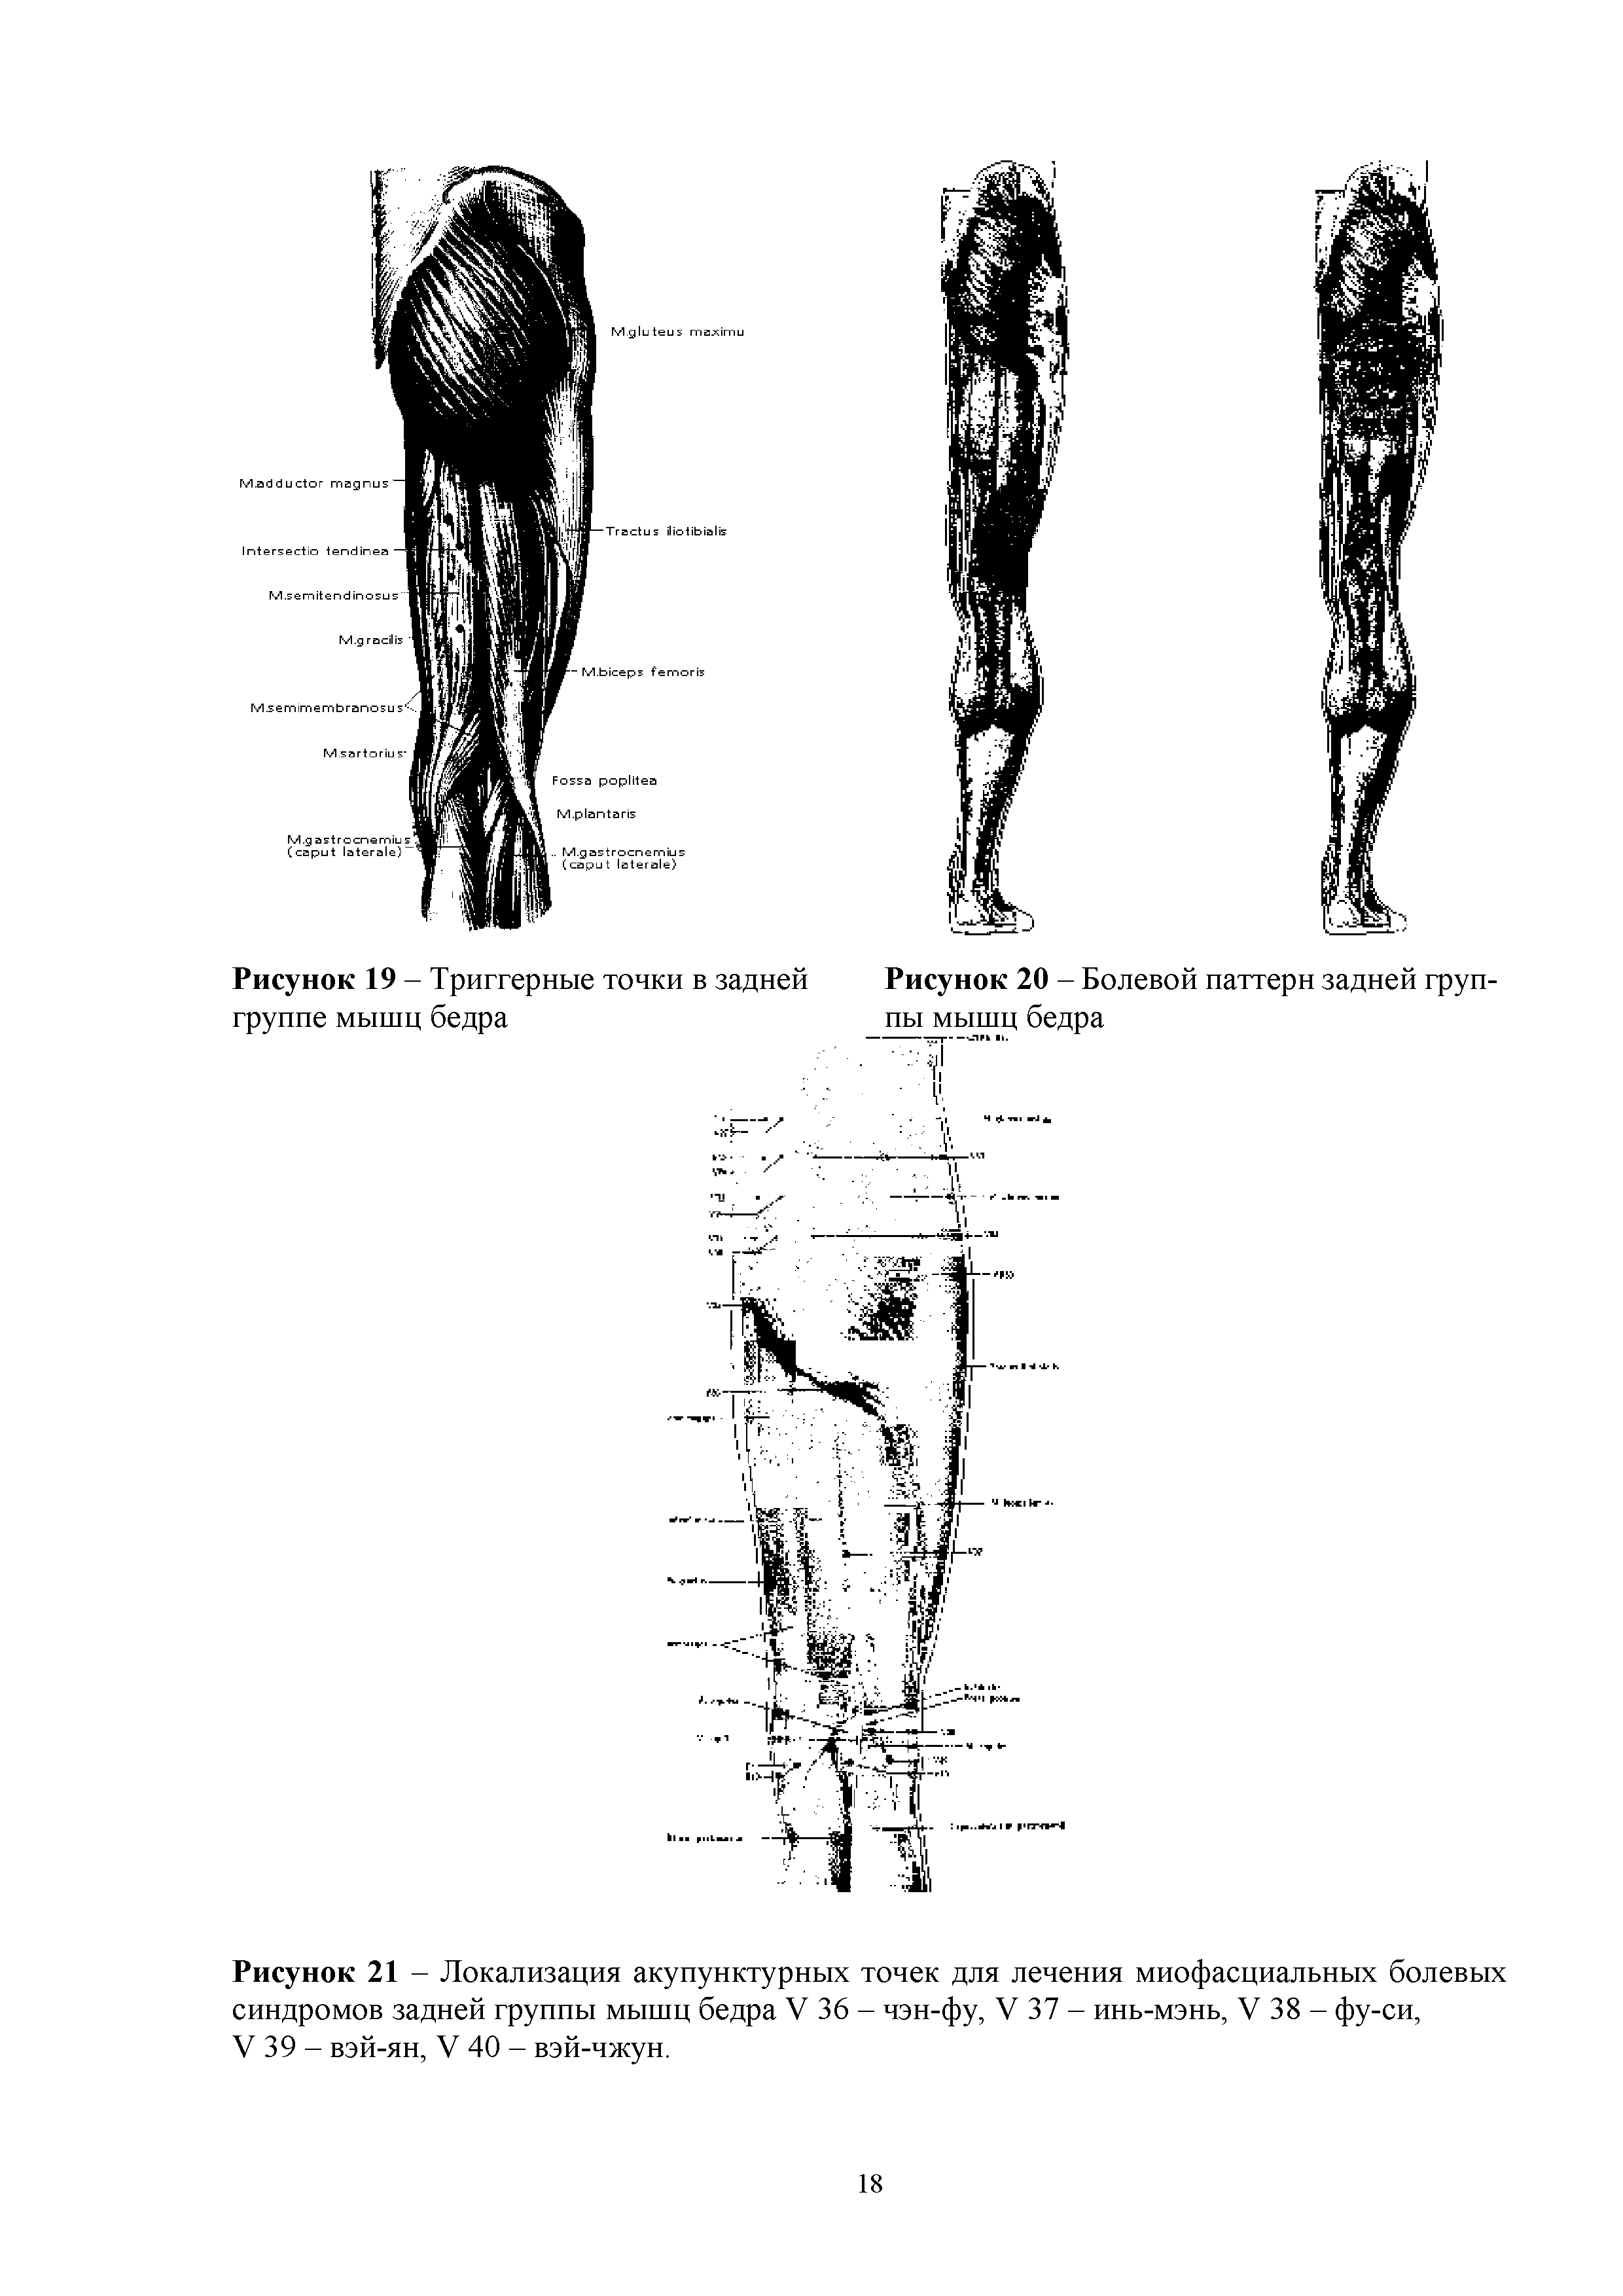 Рисунок 21 - Локализация акупунктурных точек для лечения миофасциальных болевых синдромов задней группы мышц бедра V 36 - чэн-фу, V 37 - инь-мэнь, V 38 - фу-си, V 39 - вэй-ян, V 40 - вэй-чжун.